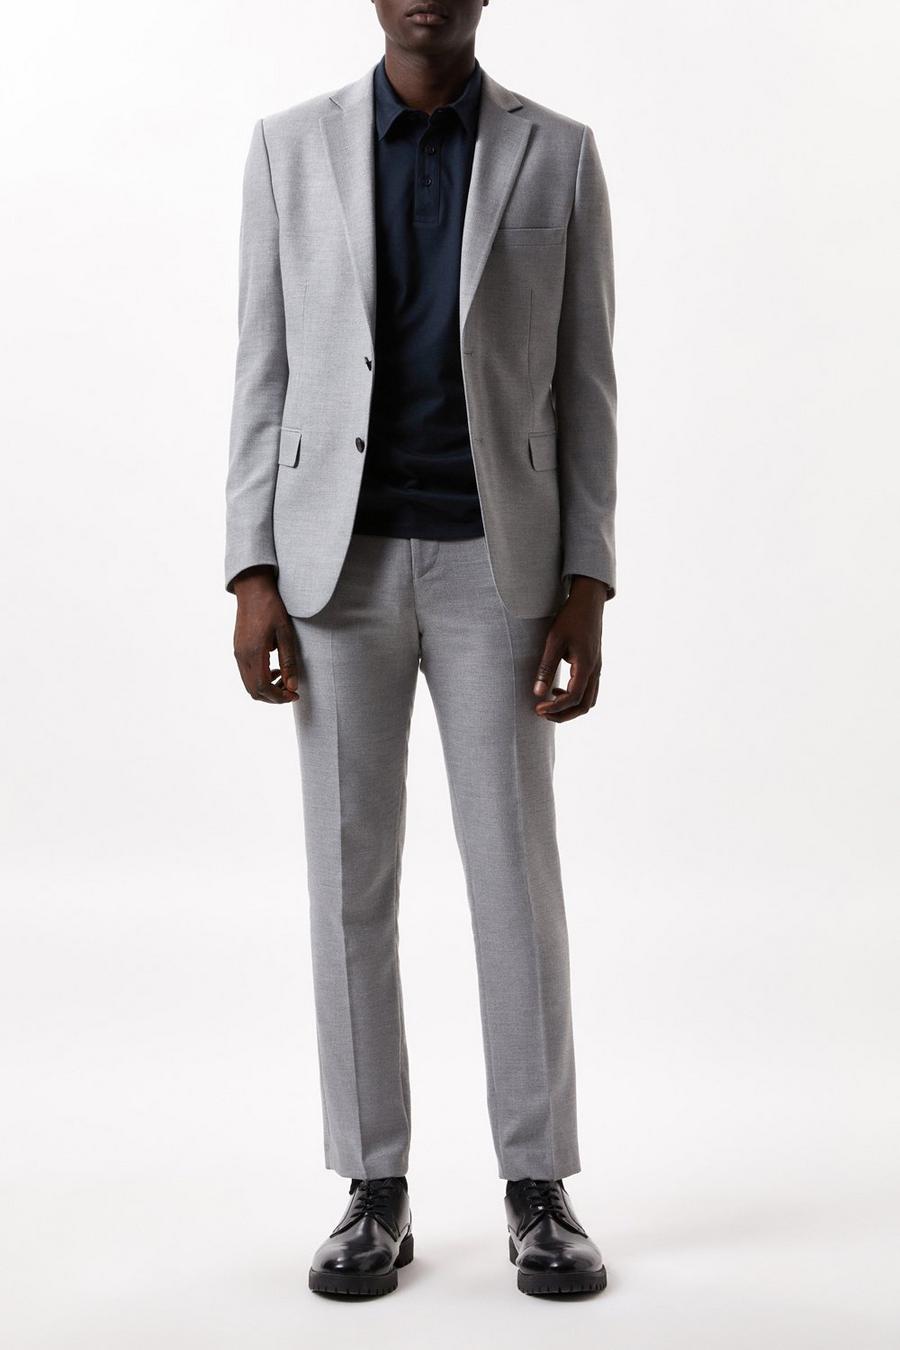 Men's Suits | Formal & Casual Suits | Burton UK